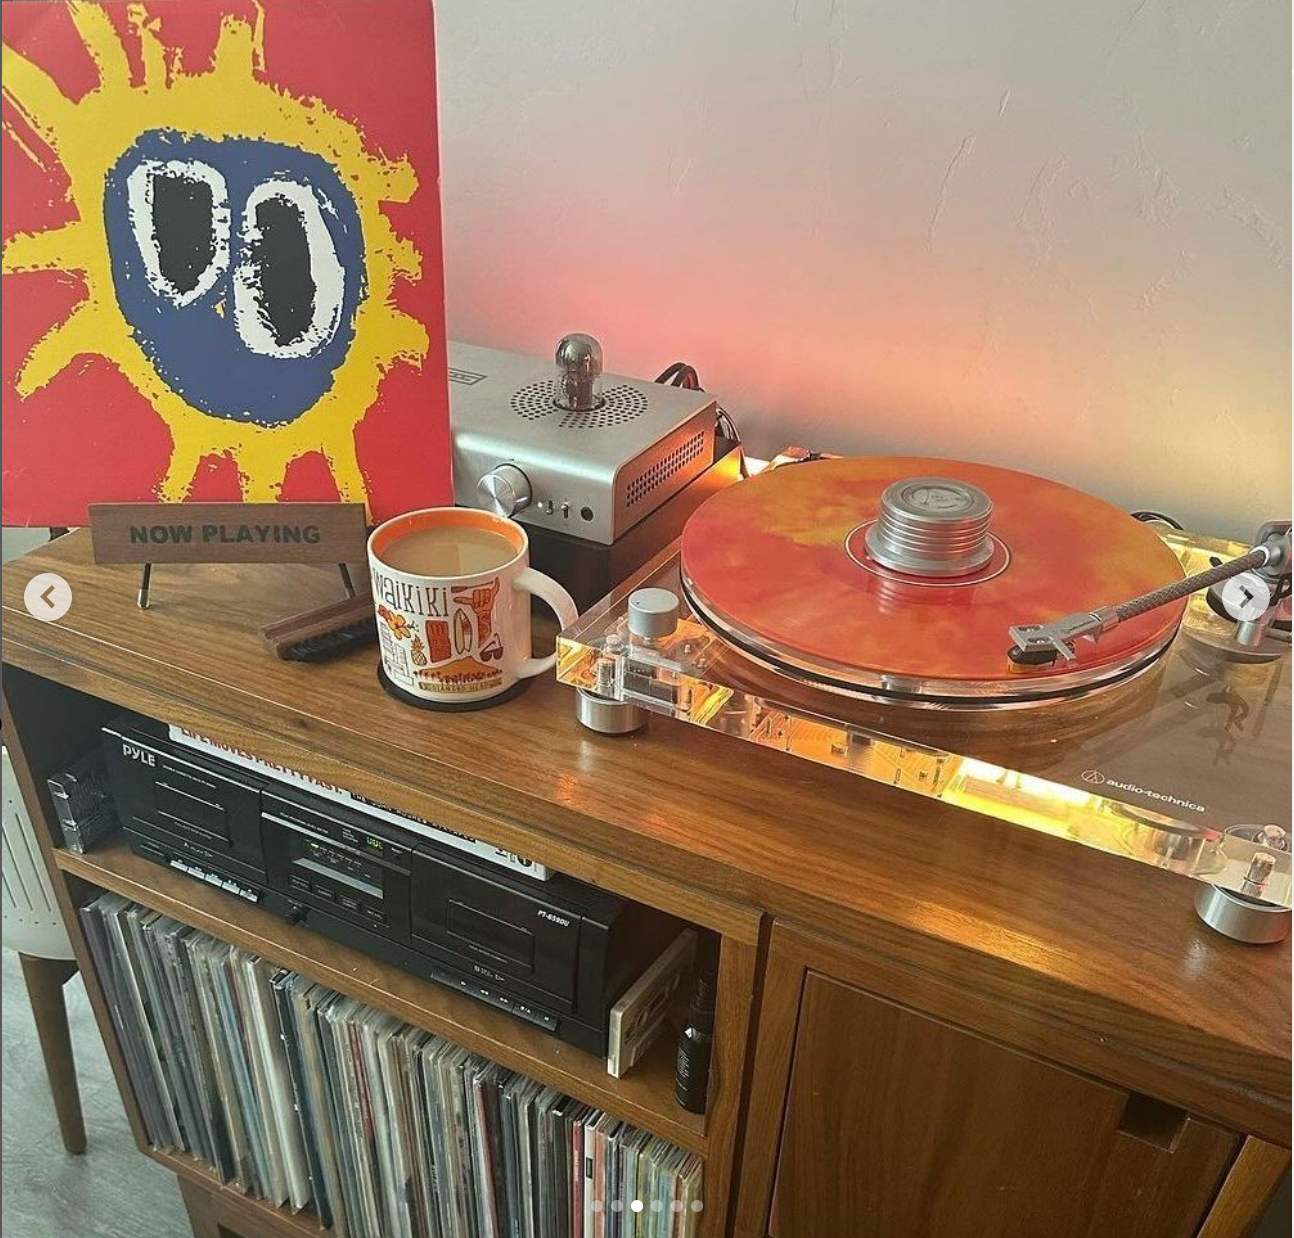 Audio-Technica Turntable with Orange Vinyl